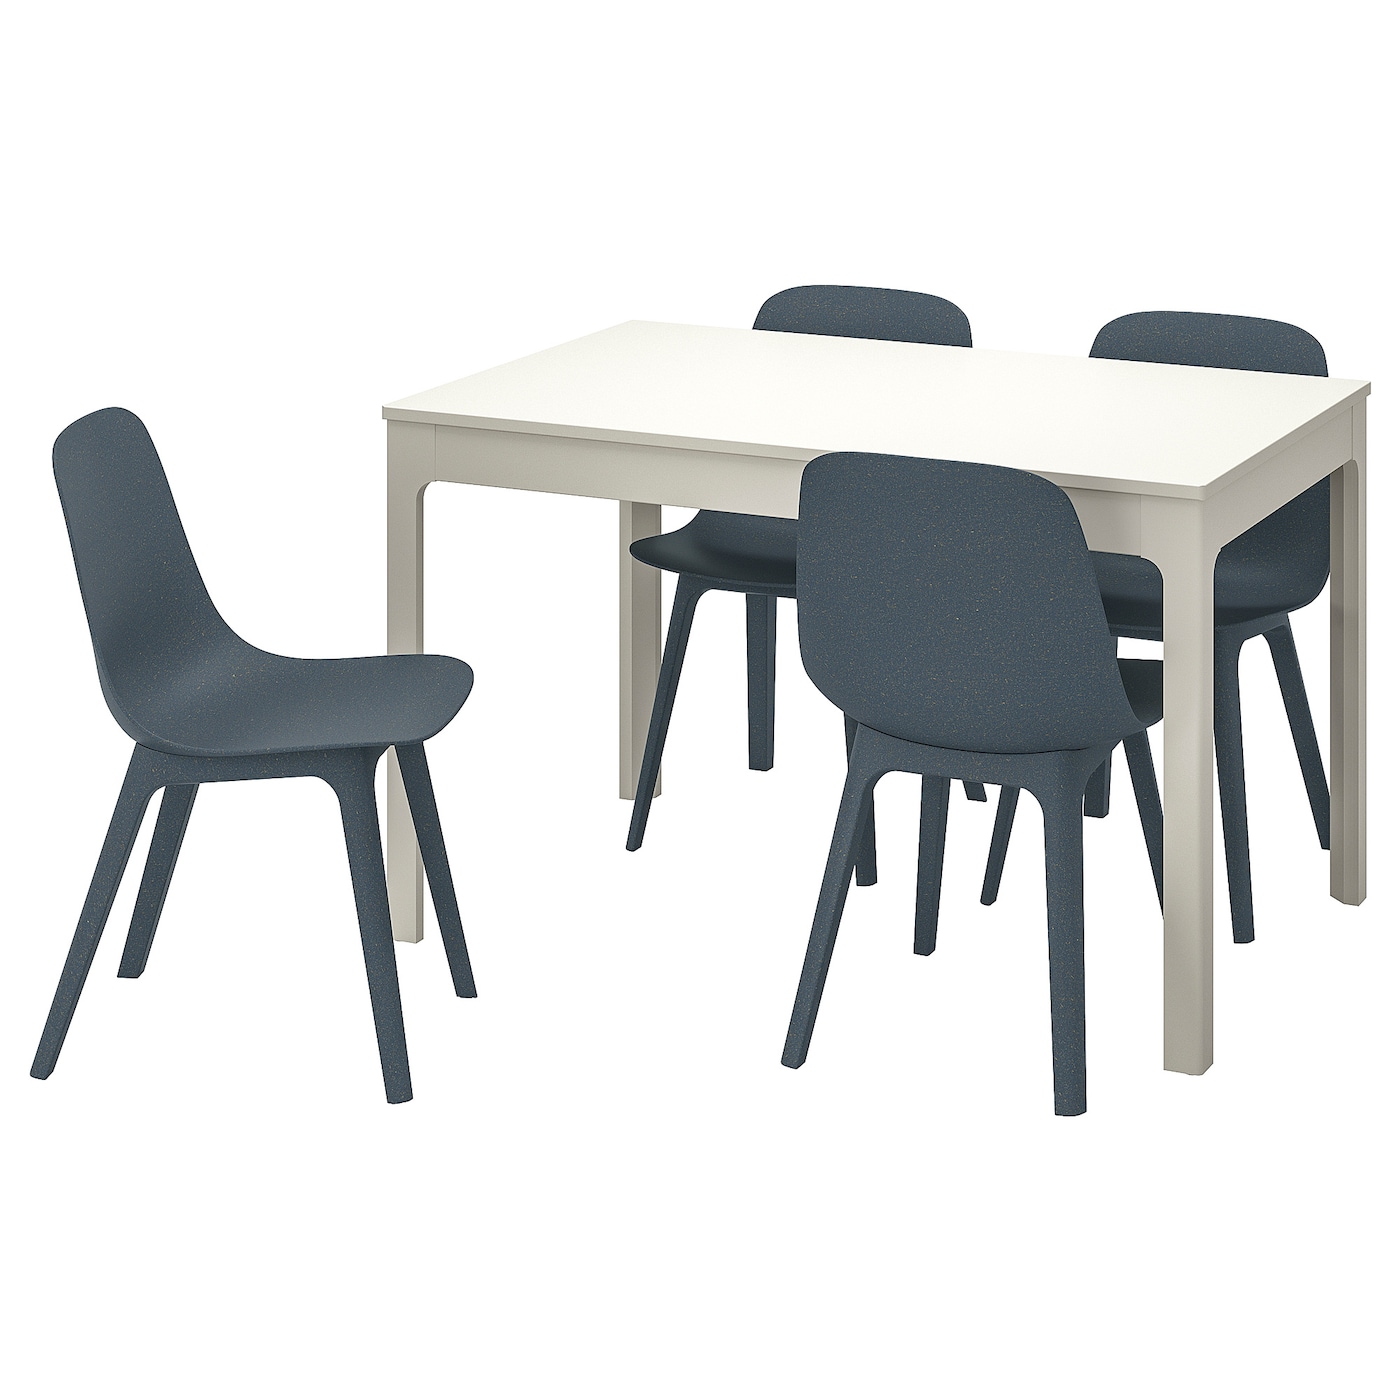 EKEDALEN / ODGER Tisch und 4 Stühle  - Essplatzgruppe - Möbel Ideen für dein Zuhause von Home Trends. Möbel Trends von Social Media Influencer für dein Skandi Zuhause.